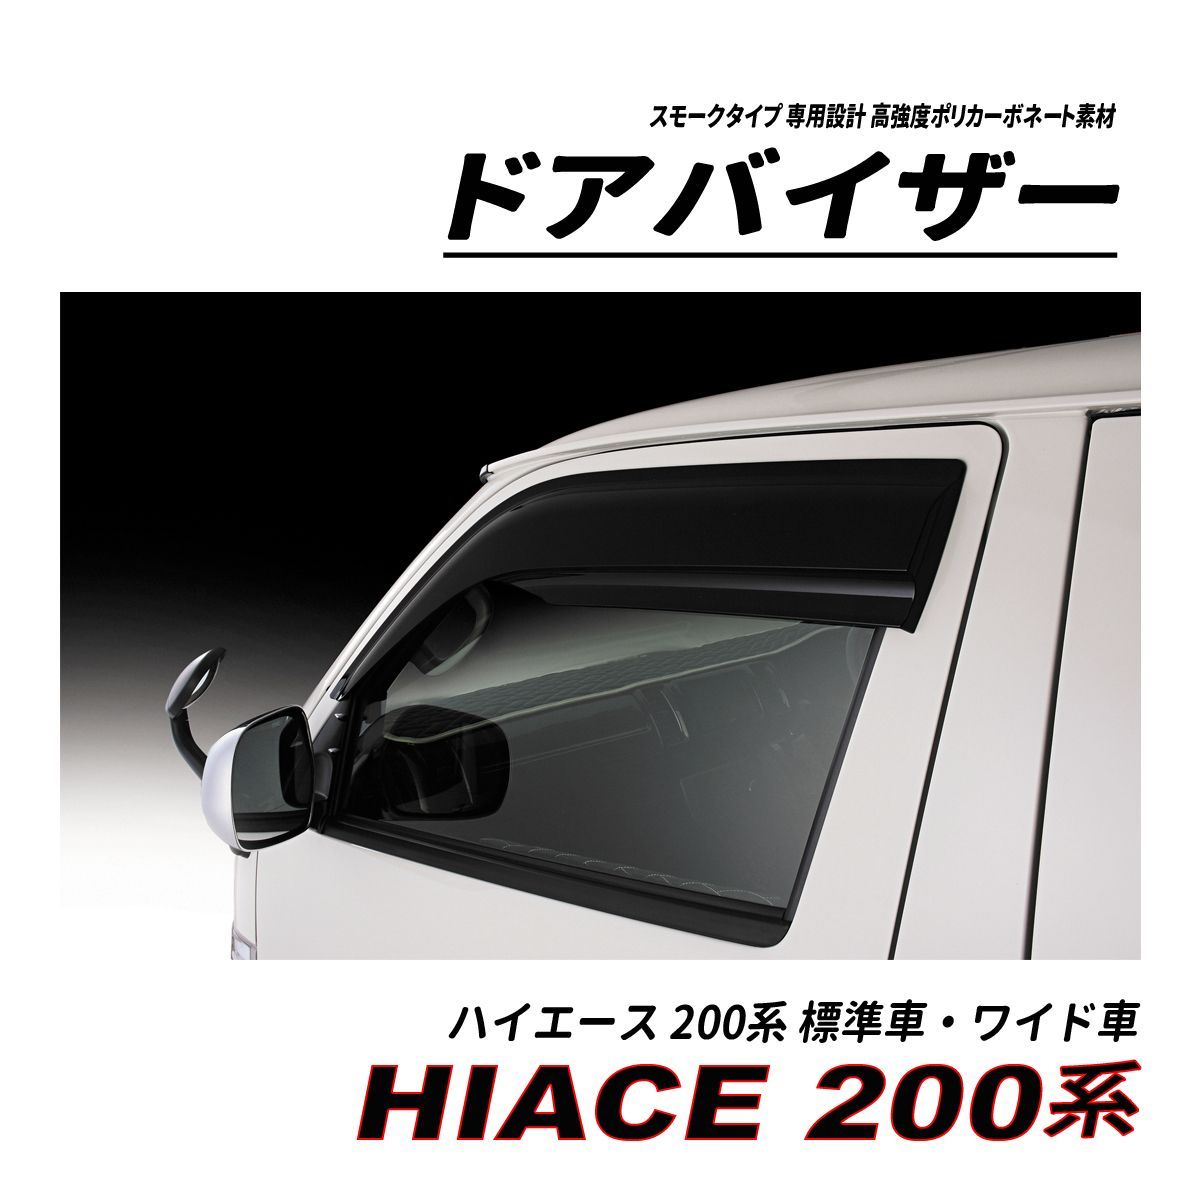 ハイエース 200 標準車 ワイド車 ハイルーフ ドアバイザー スモークタイプ